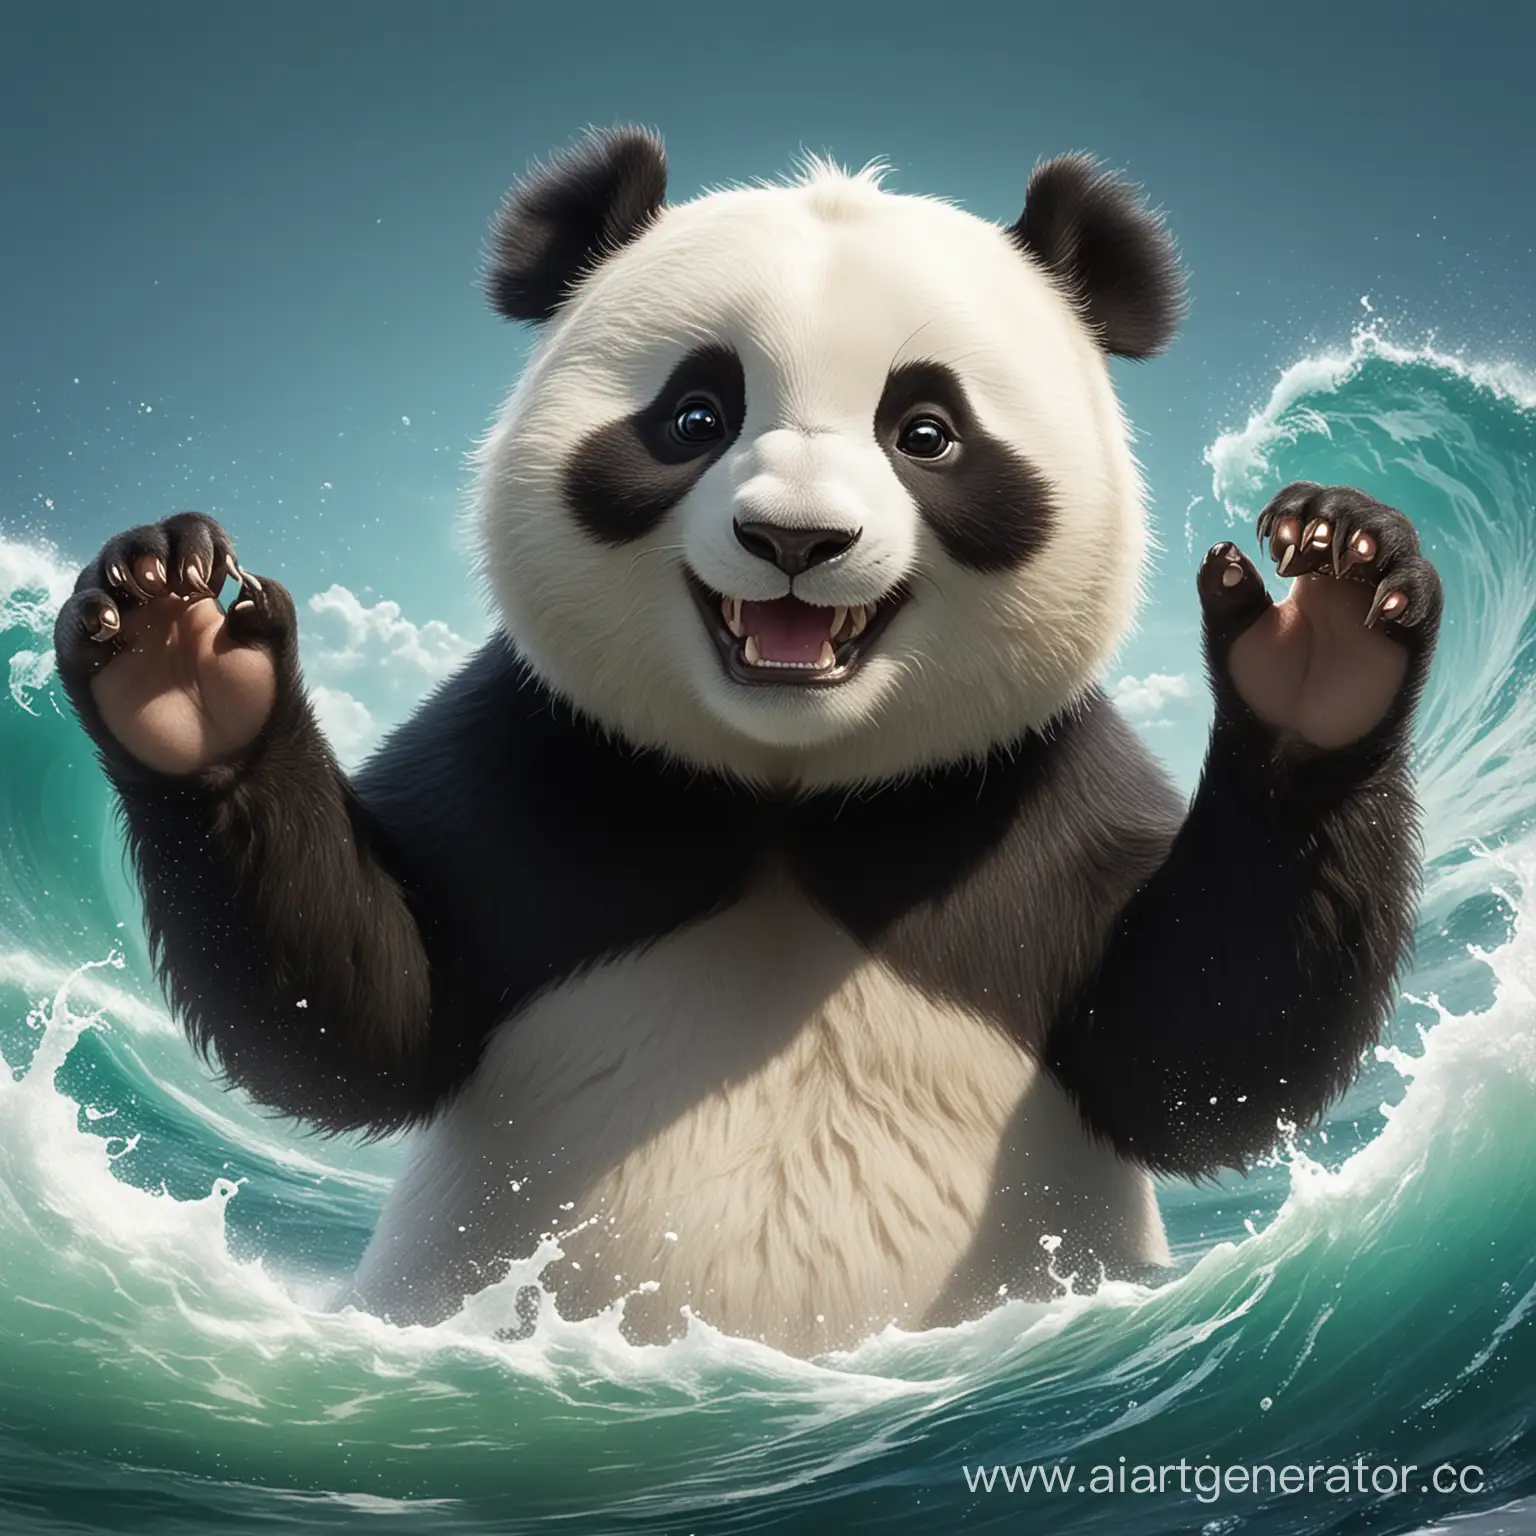 унфу панда, улыбается, машет рукой, яркое, объёмное, 
высокое разрешение, качество